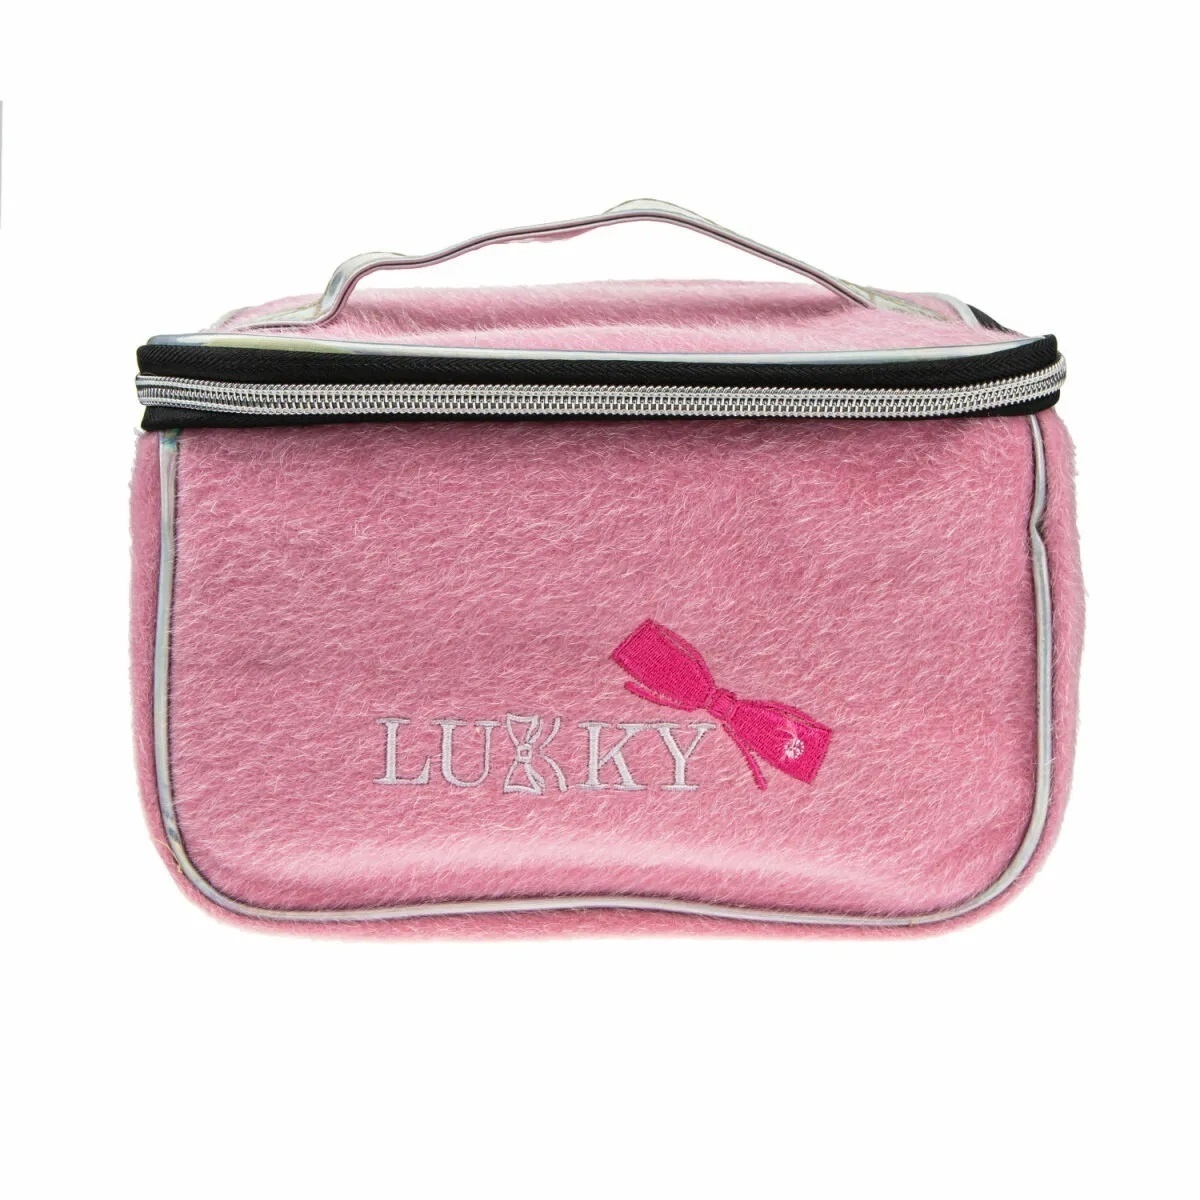 Lukky Т21413 Косметичка-чемоданчик с лого розовая 23*16*13см - Ижевск 